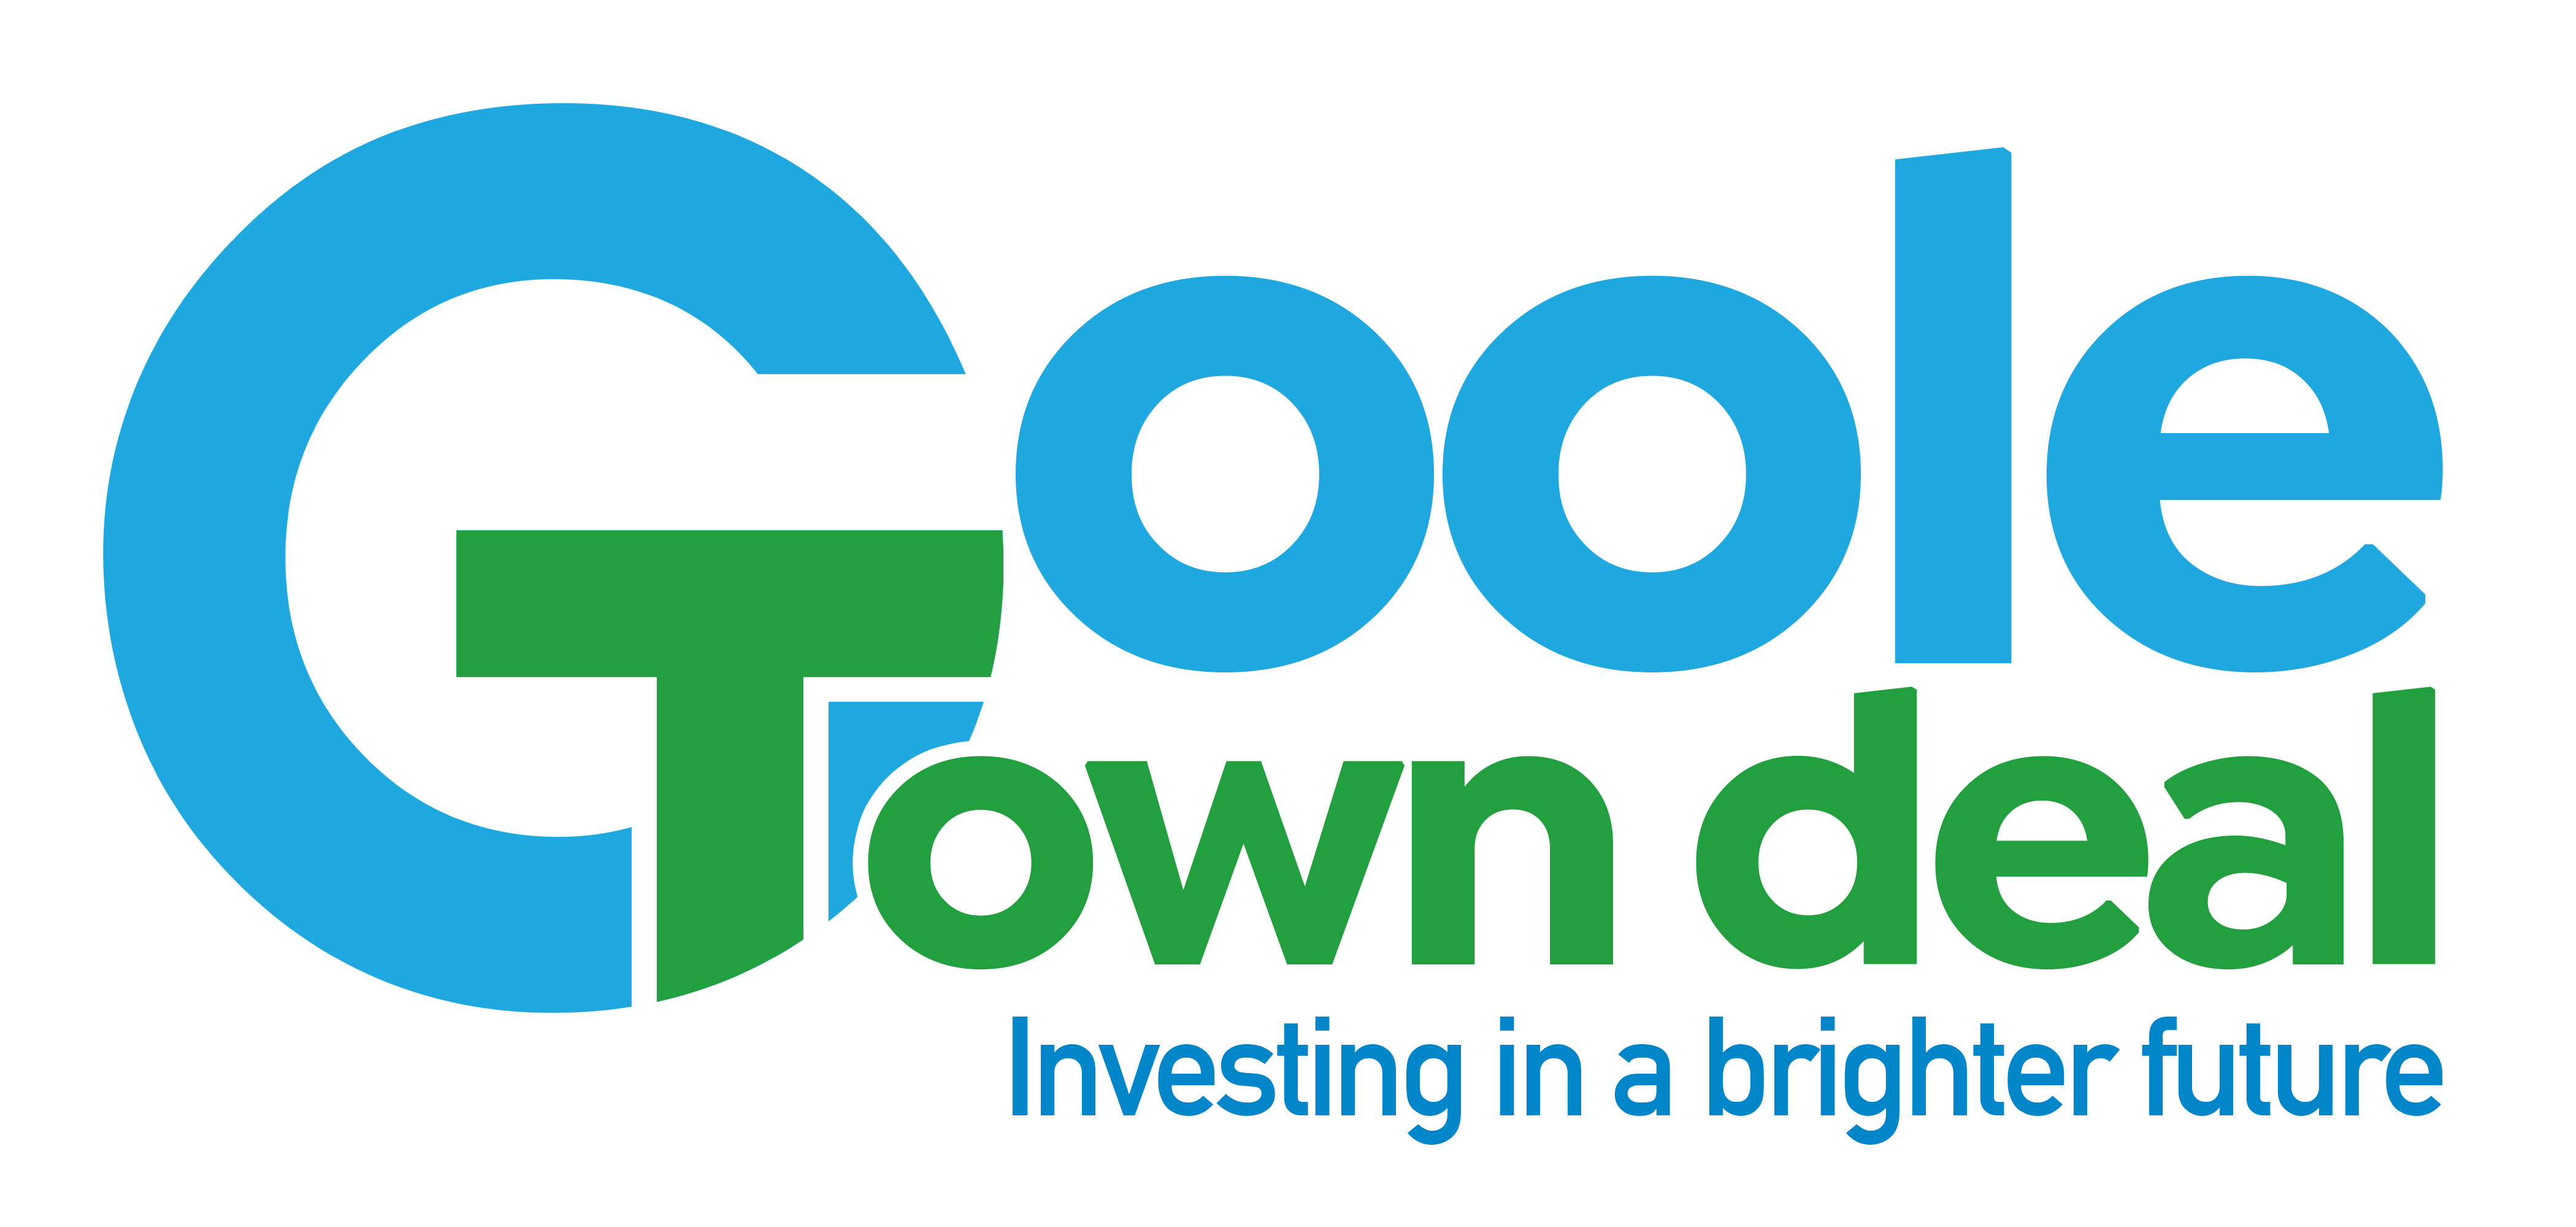 Goole Town Deal logo